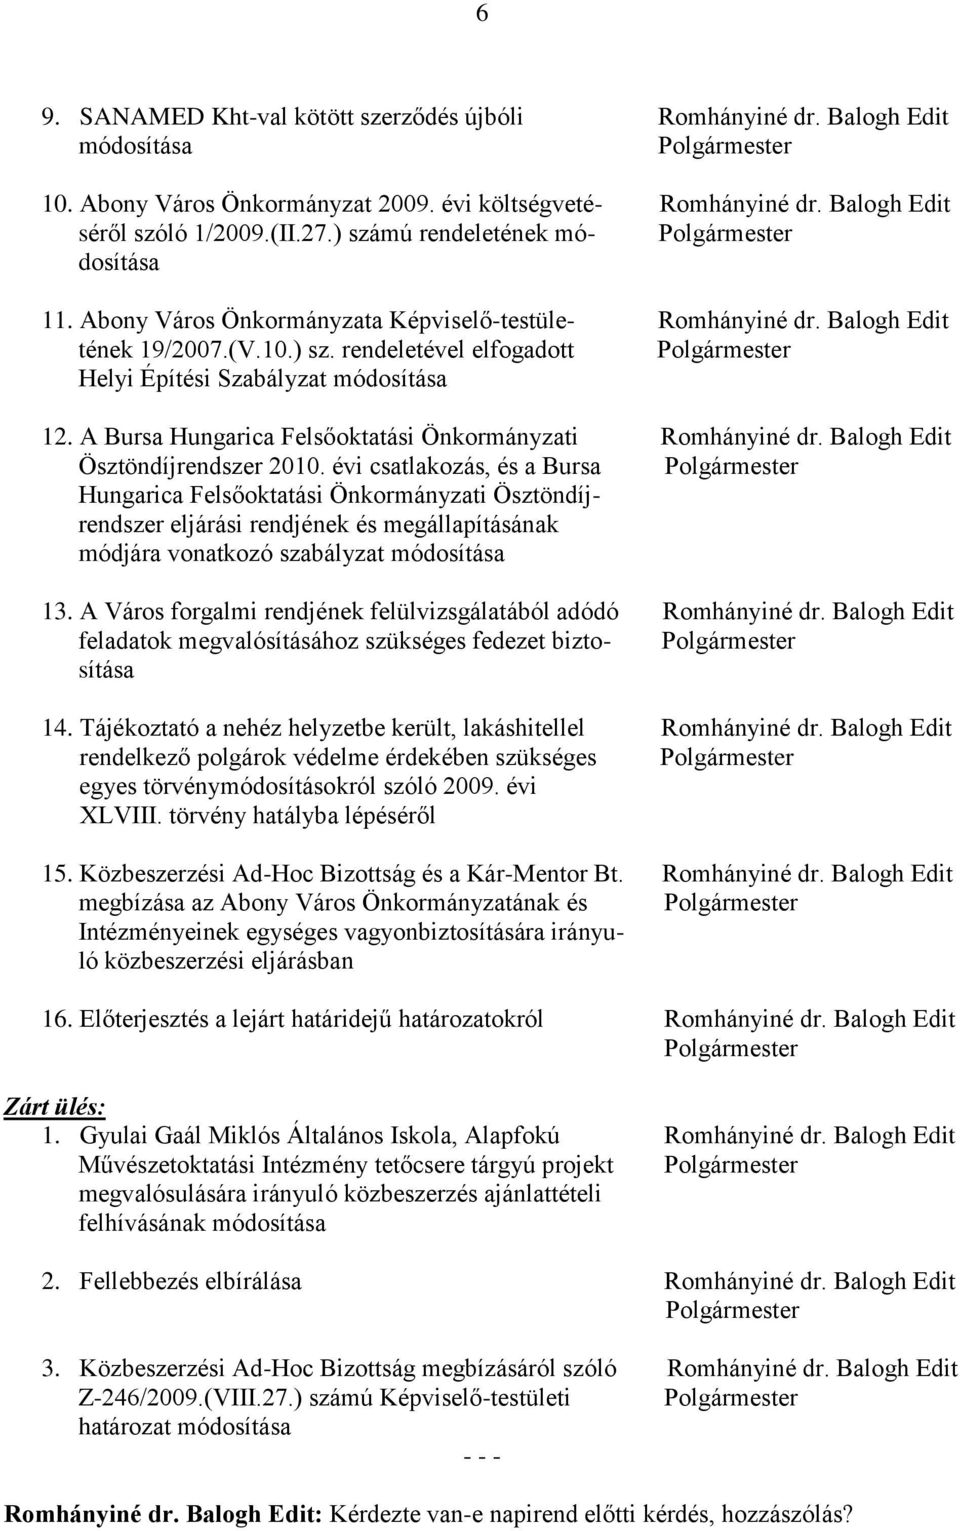 A Bursa Hungarica Felsőoktatási Önkormányzati Romhányiné dr. Balogh Edit Ösztöndíjrendszer 2010.